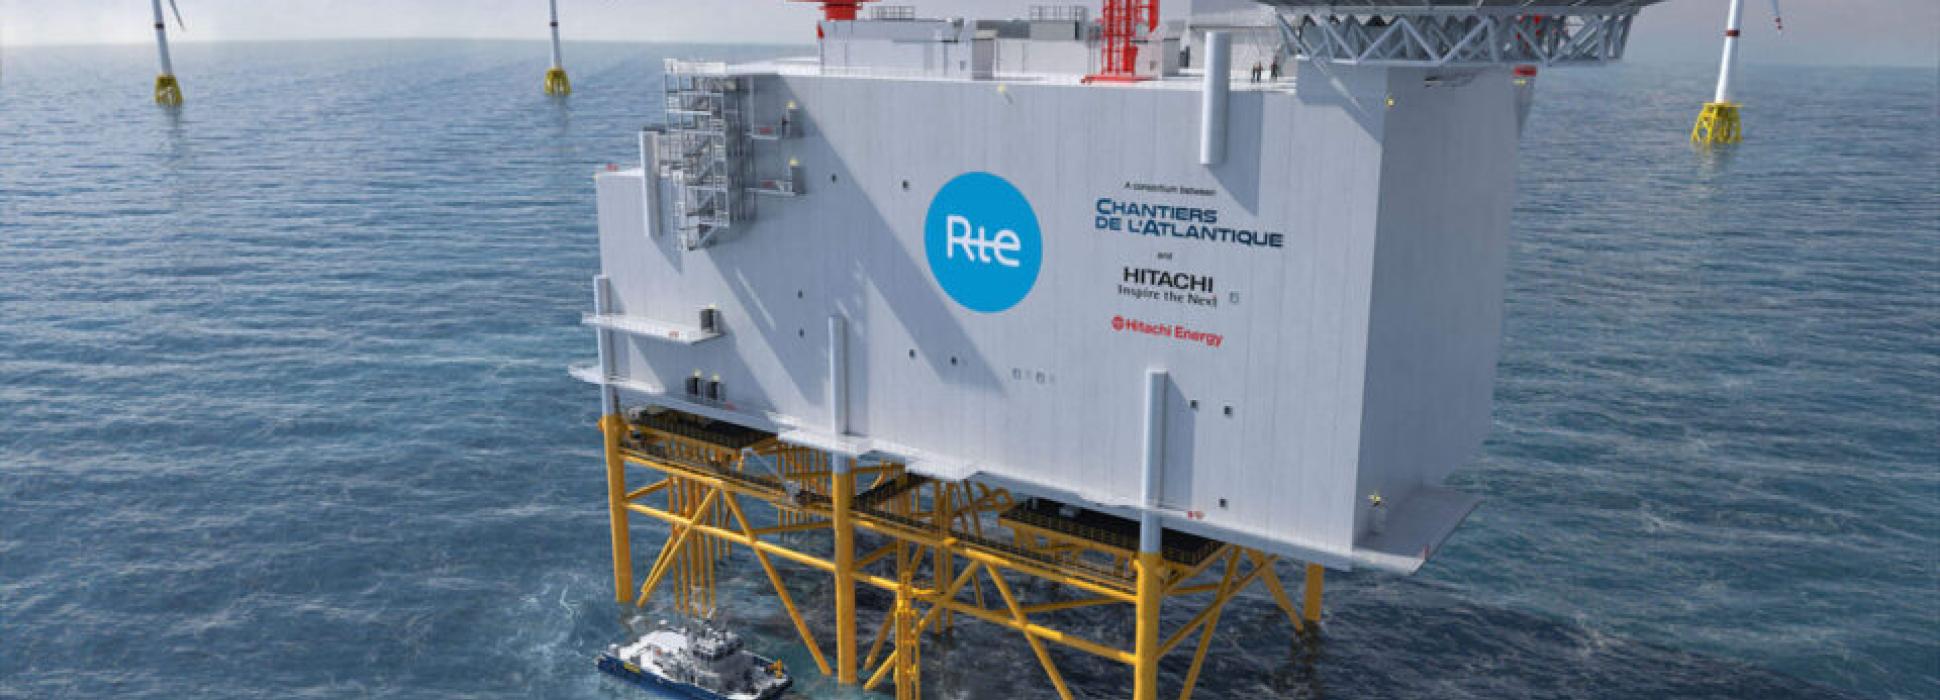 Les géants des réseaux électriques RTE, Les Chantiers de l’Atlantique et Hitachi Energy signent un accord historique pour l’éolien en mer